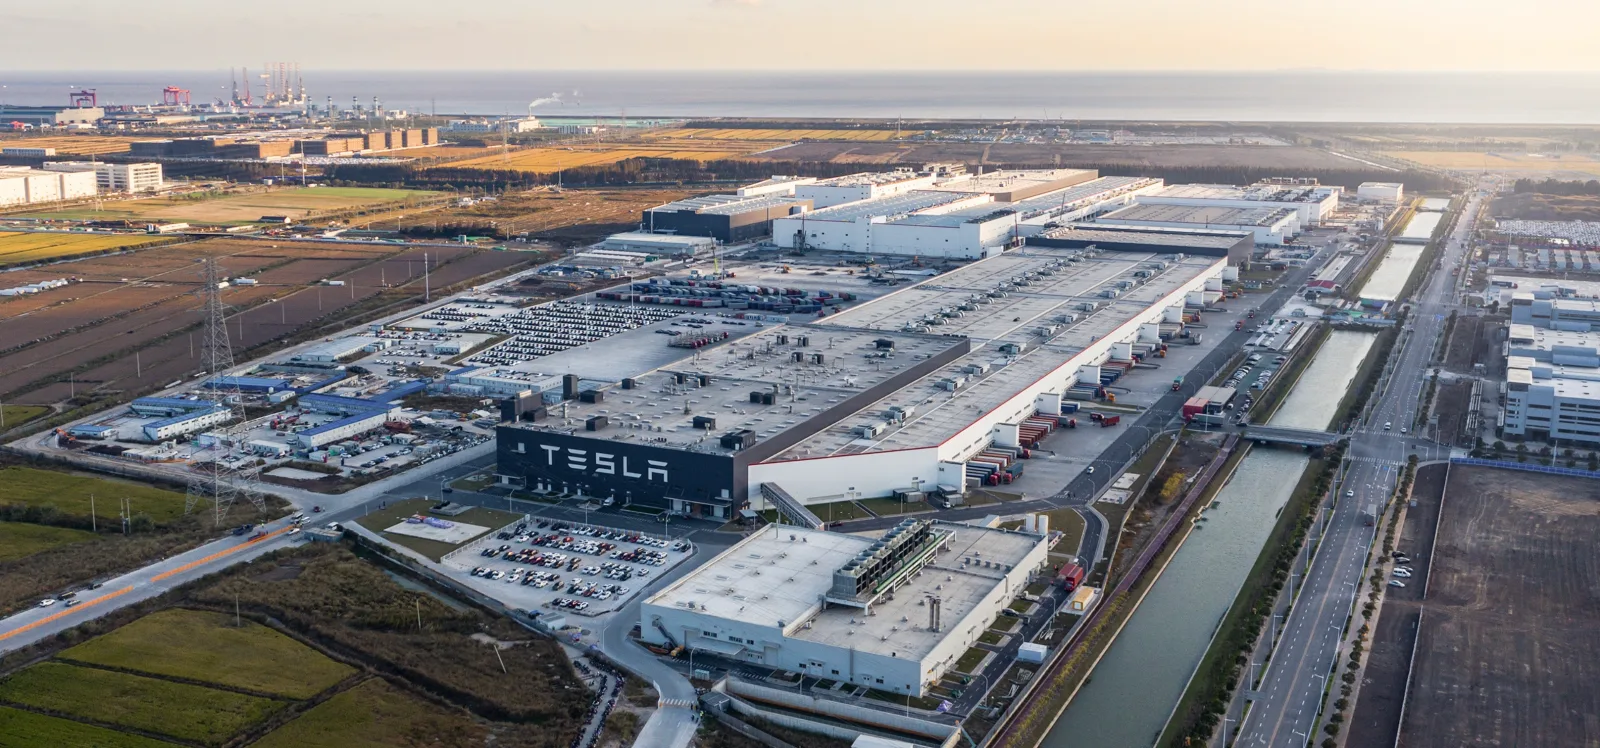 Tesla ridurrà drasticamente la produzione di auto elettriche nello stabilimento di Shanghai, che può produrre 1 milione di auto all'anno, a causa del calo della domanda.